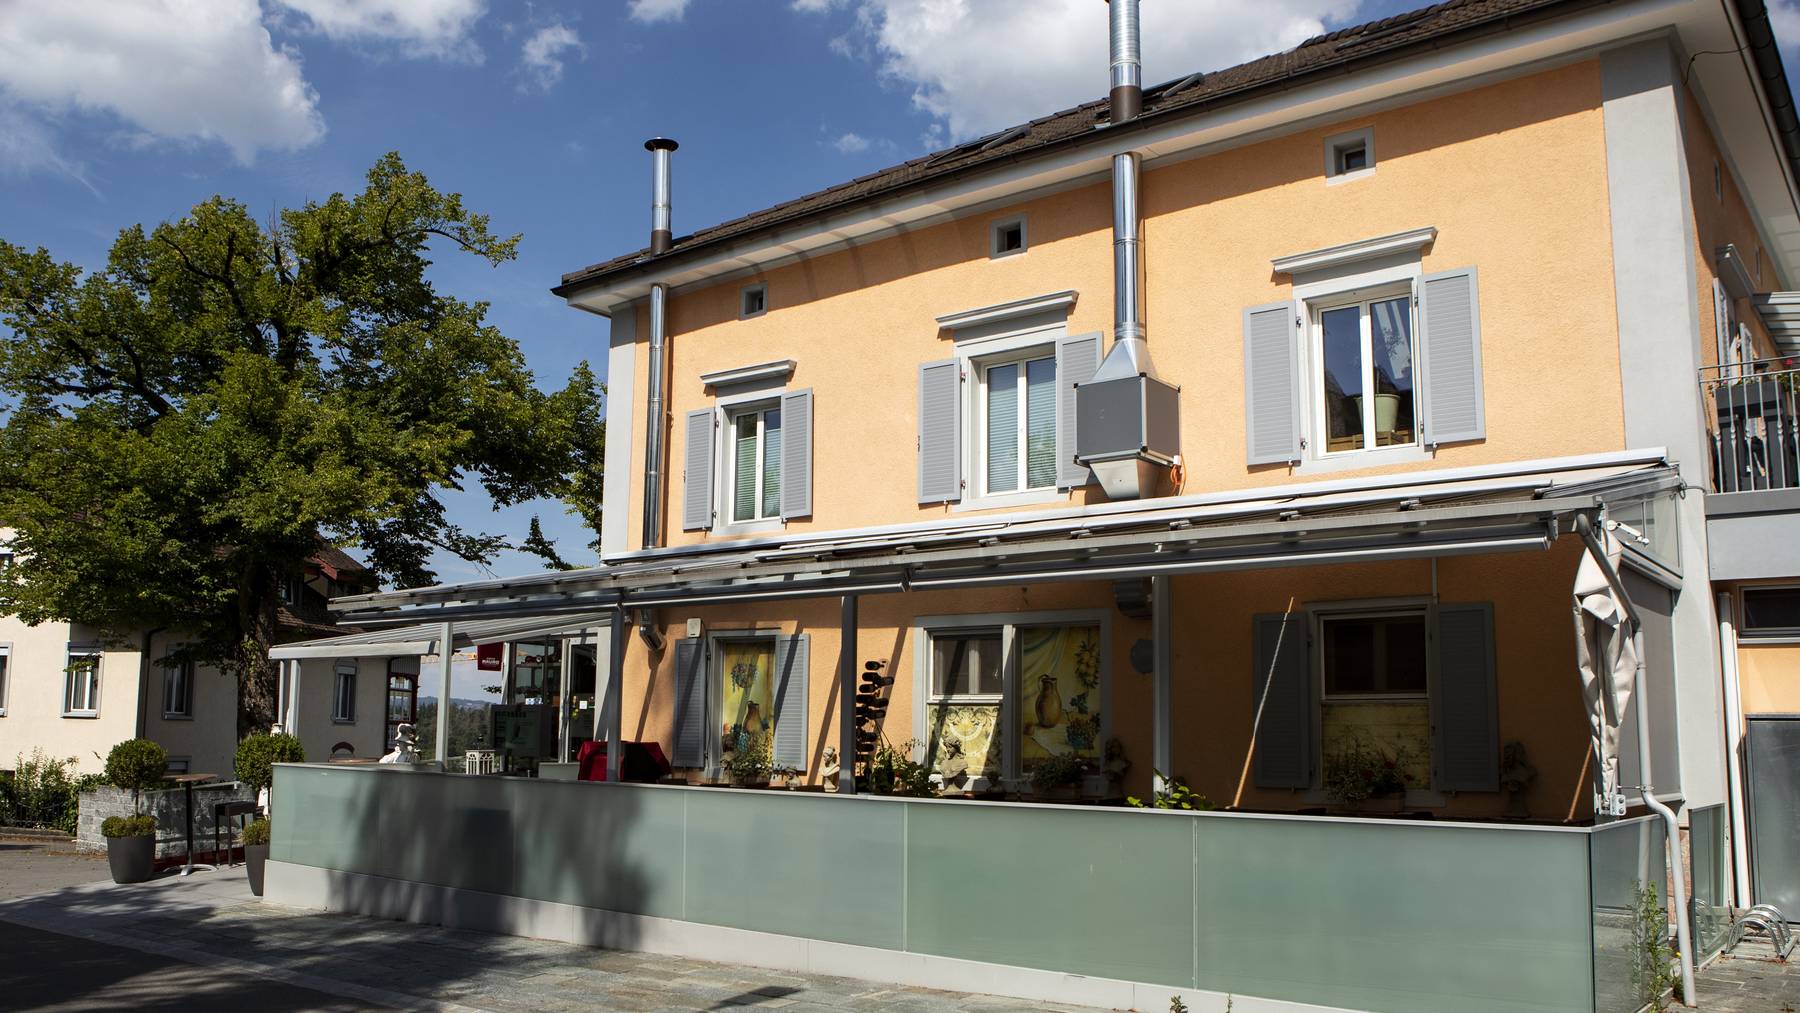 Das Restaurant Bella Vista im Aargauischen Muri wurde vergangene Woche mit Verdacht auf mafiöse Aktivitäten durchsucht.